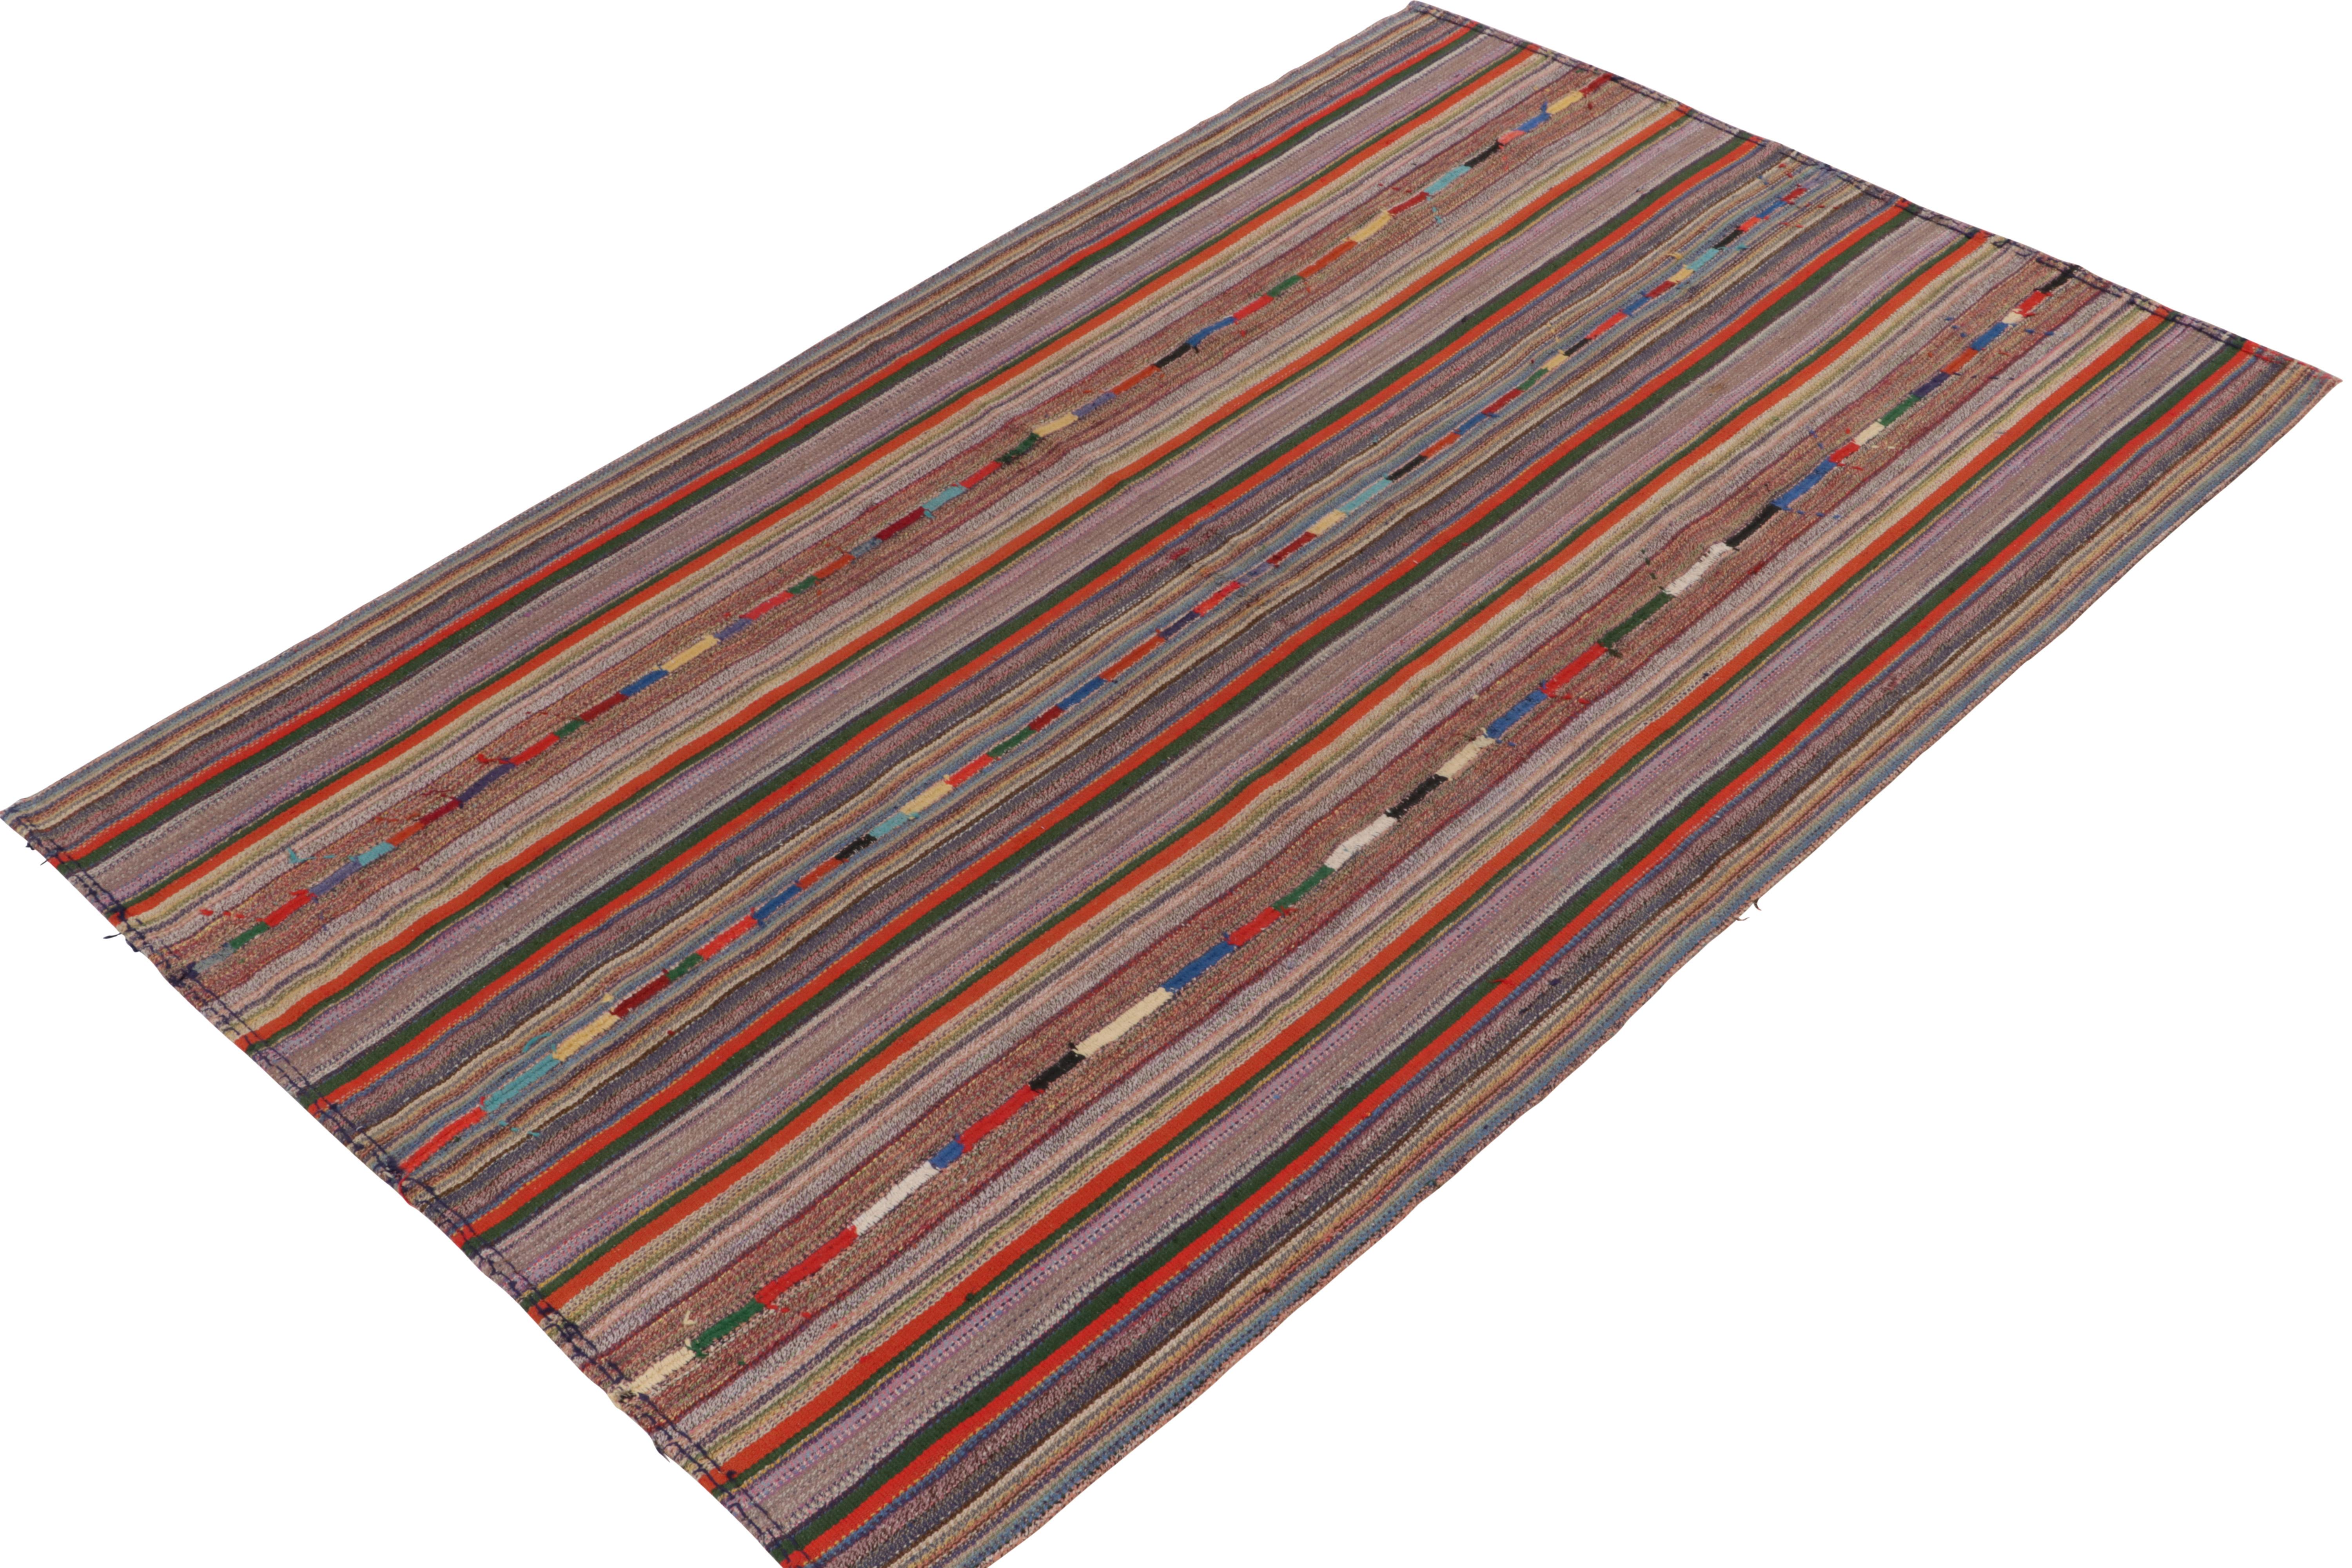 1950s rugs